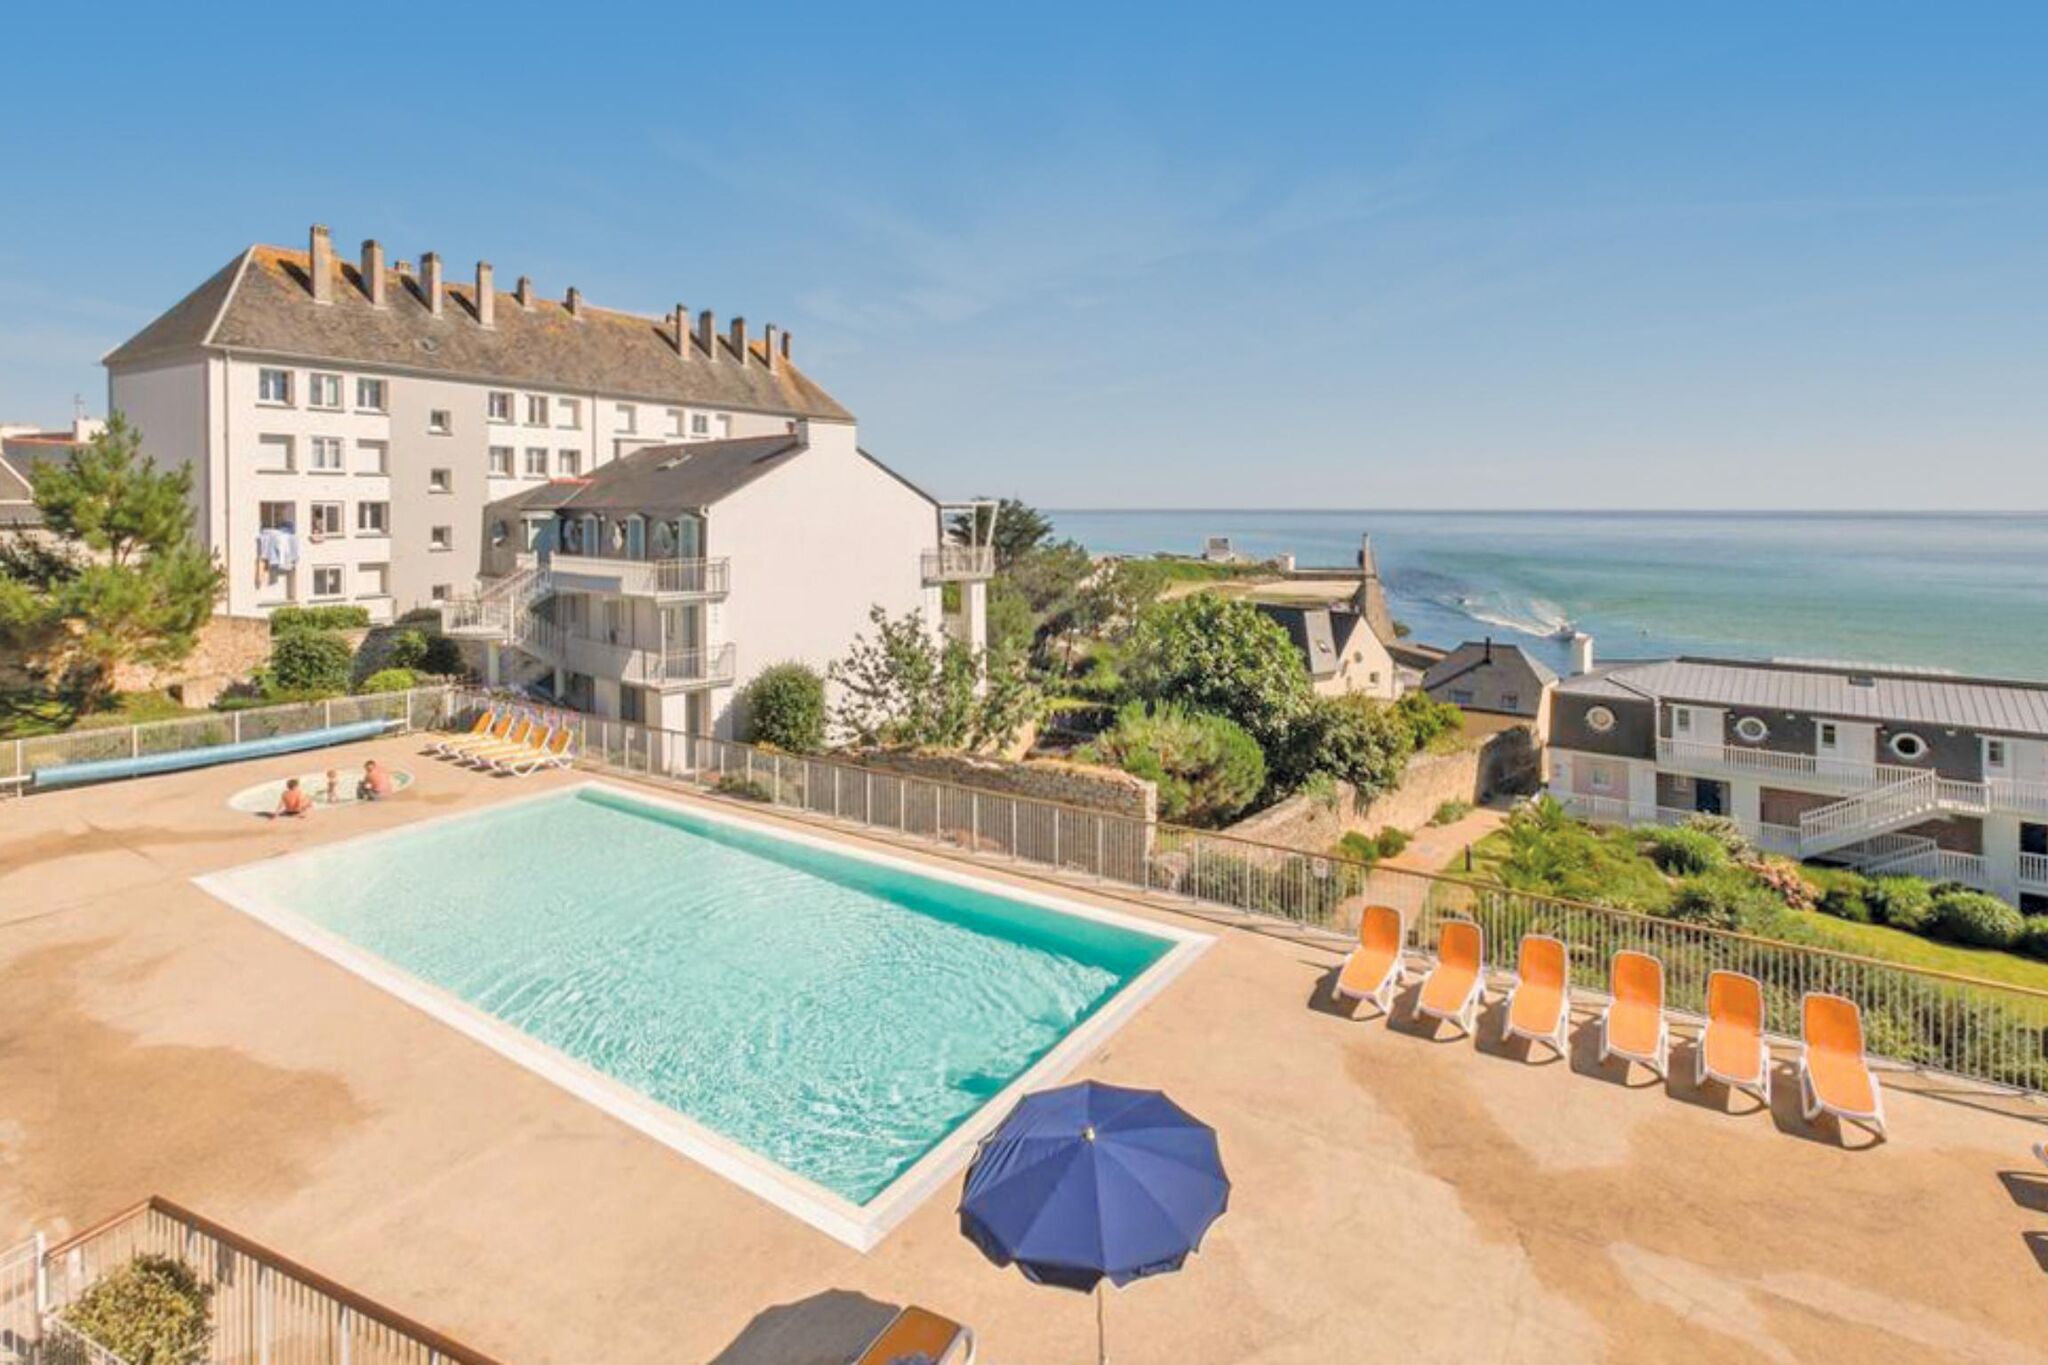 Appartement avec piscine et vue mer dans le sud-ouest de la Bretagne